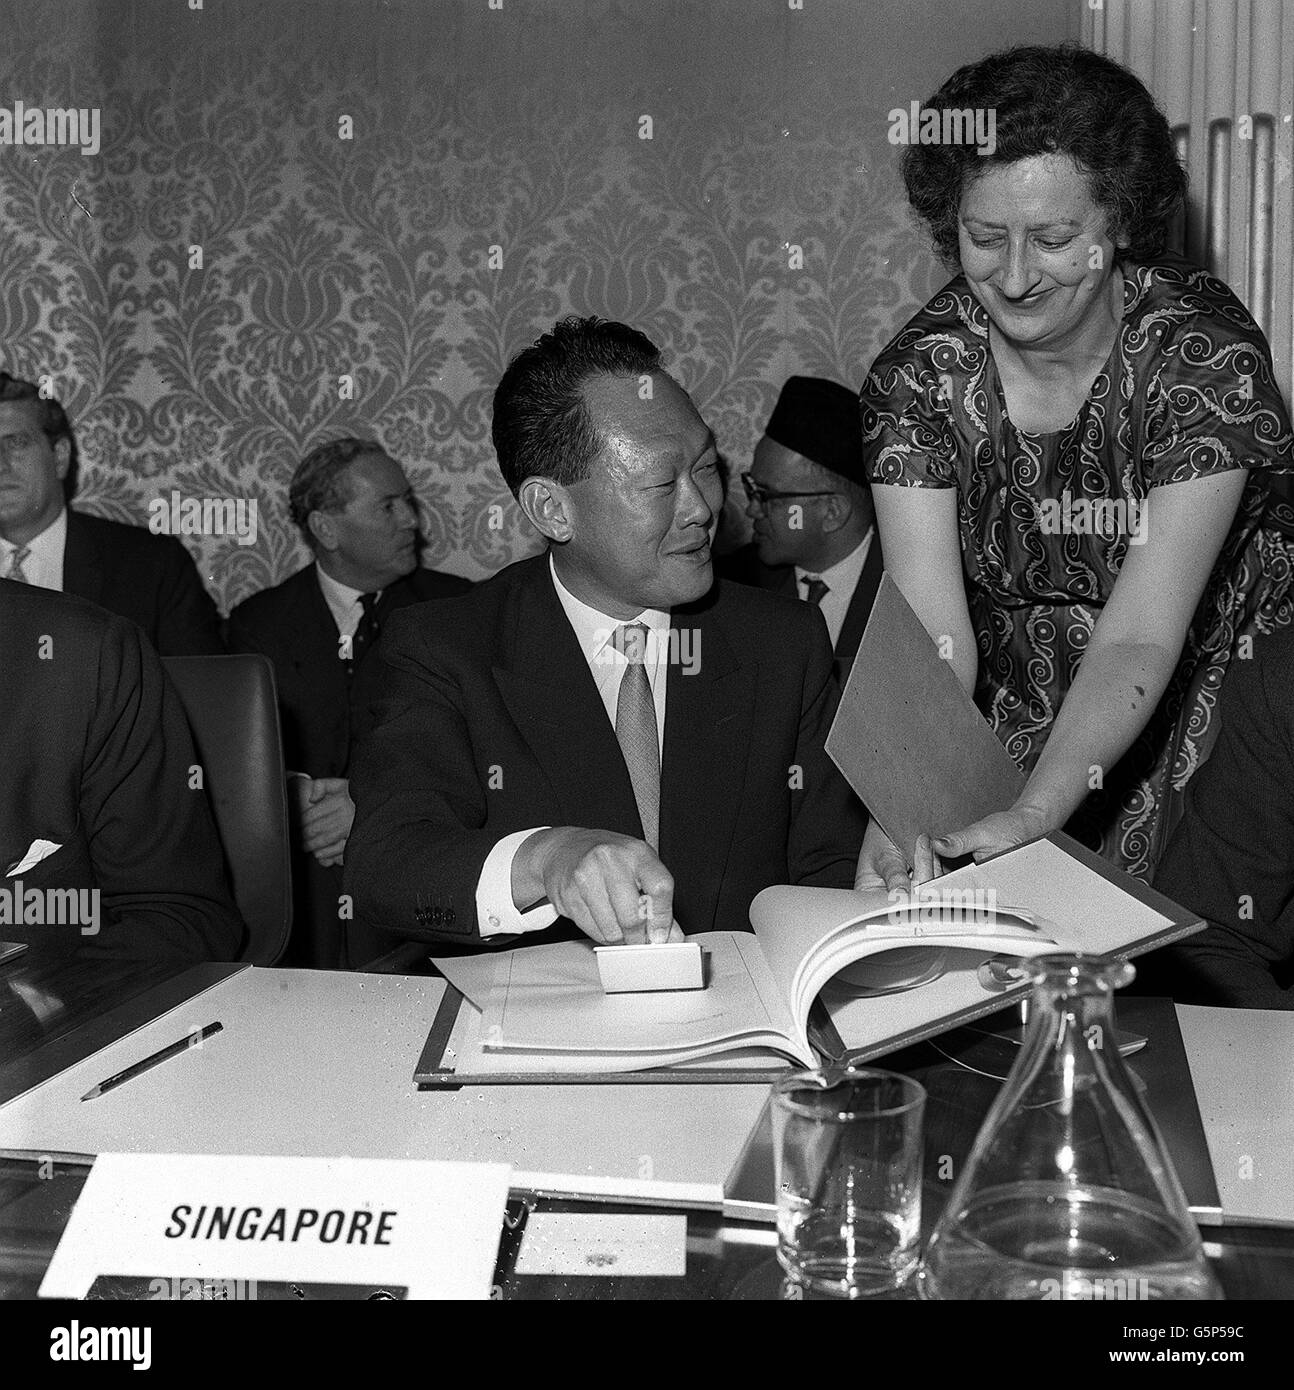 Lee Kuan Yew applica sorridentemente un blotter dopo aver firmato come uno dei delegati di Singapore l'accordo che istituisce la Federazione della Malesia. Foto Stock